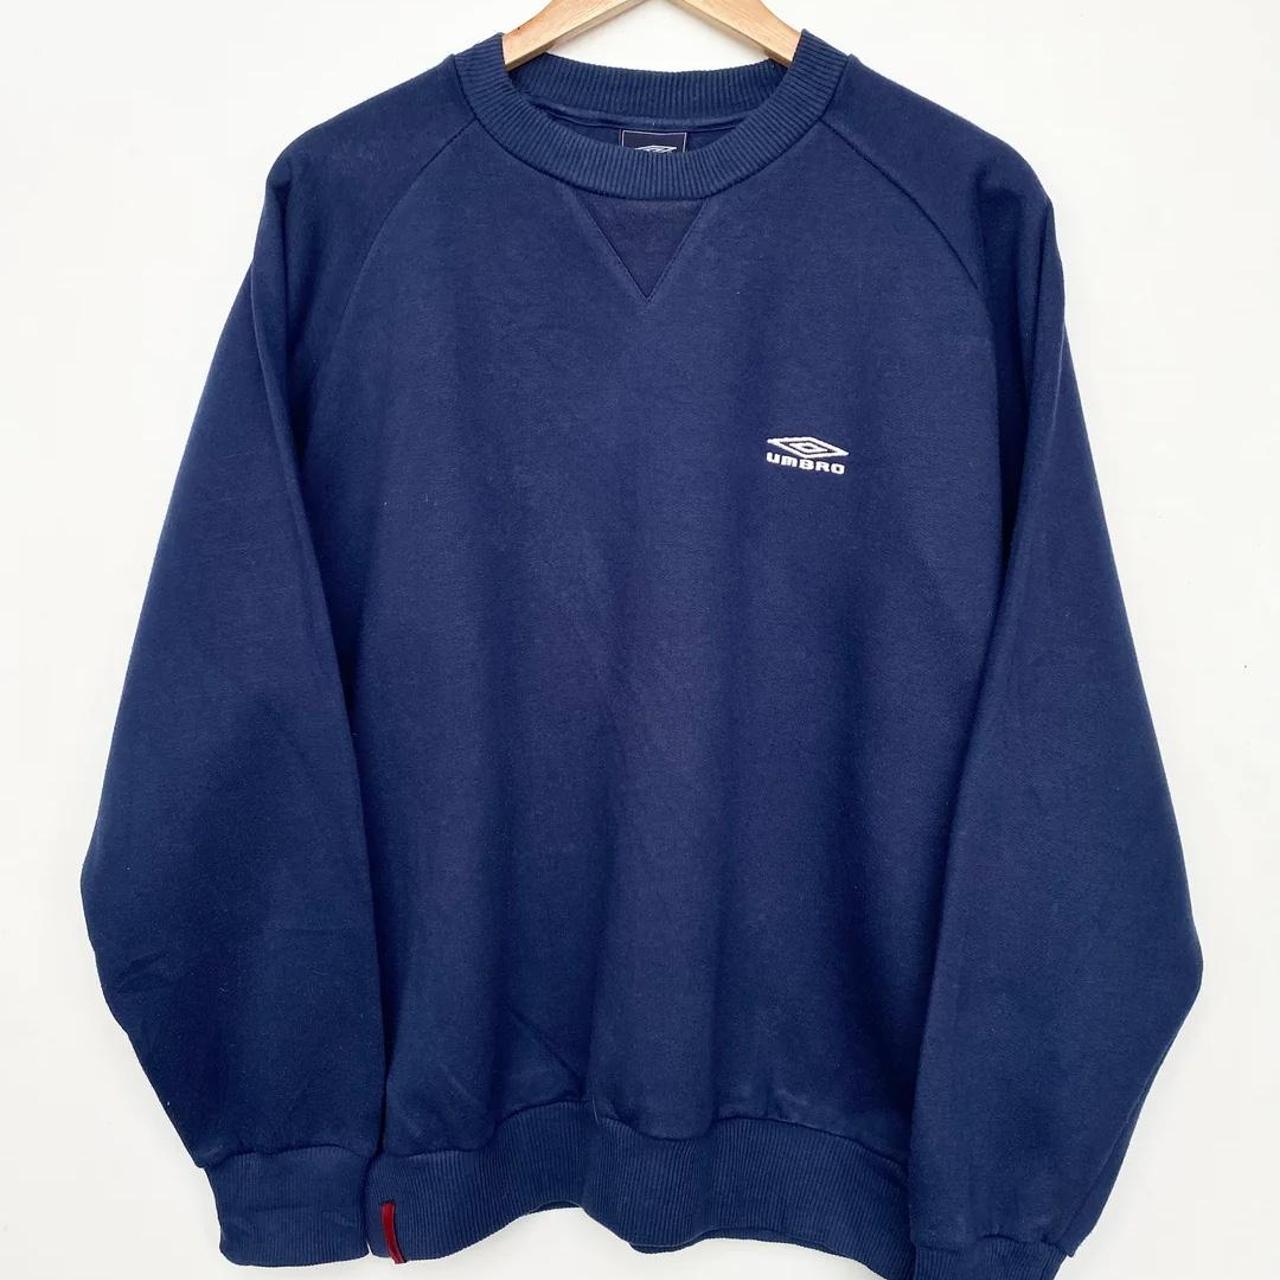 Umbro sweatshirt 2000s (M) Vintage 00s Umbro... - Depop